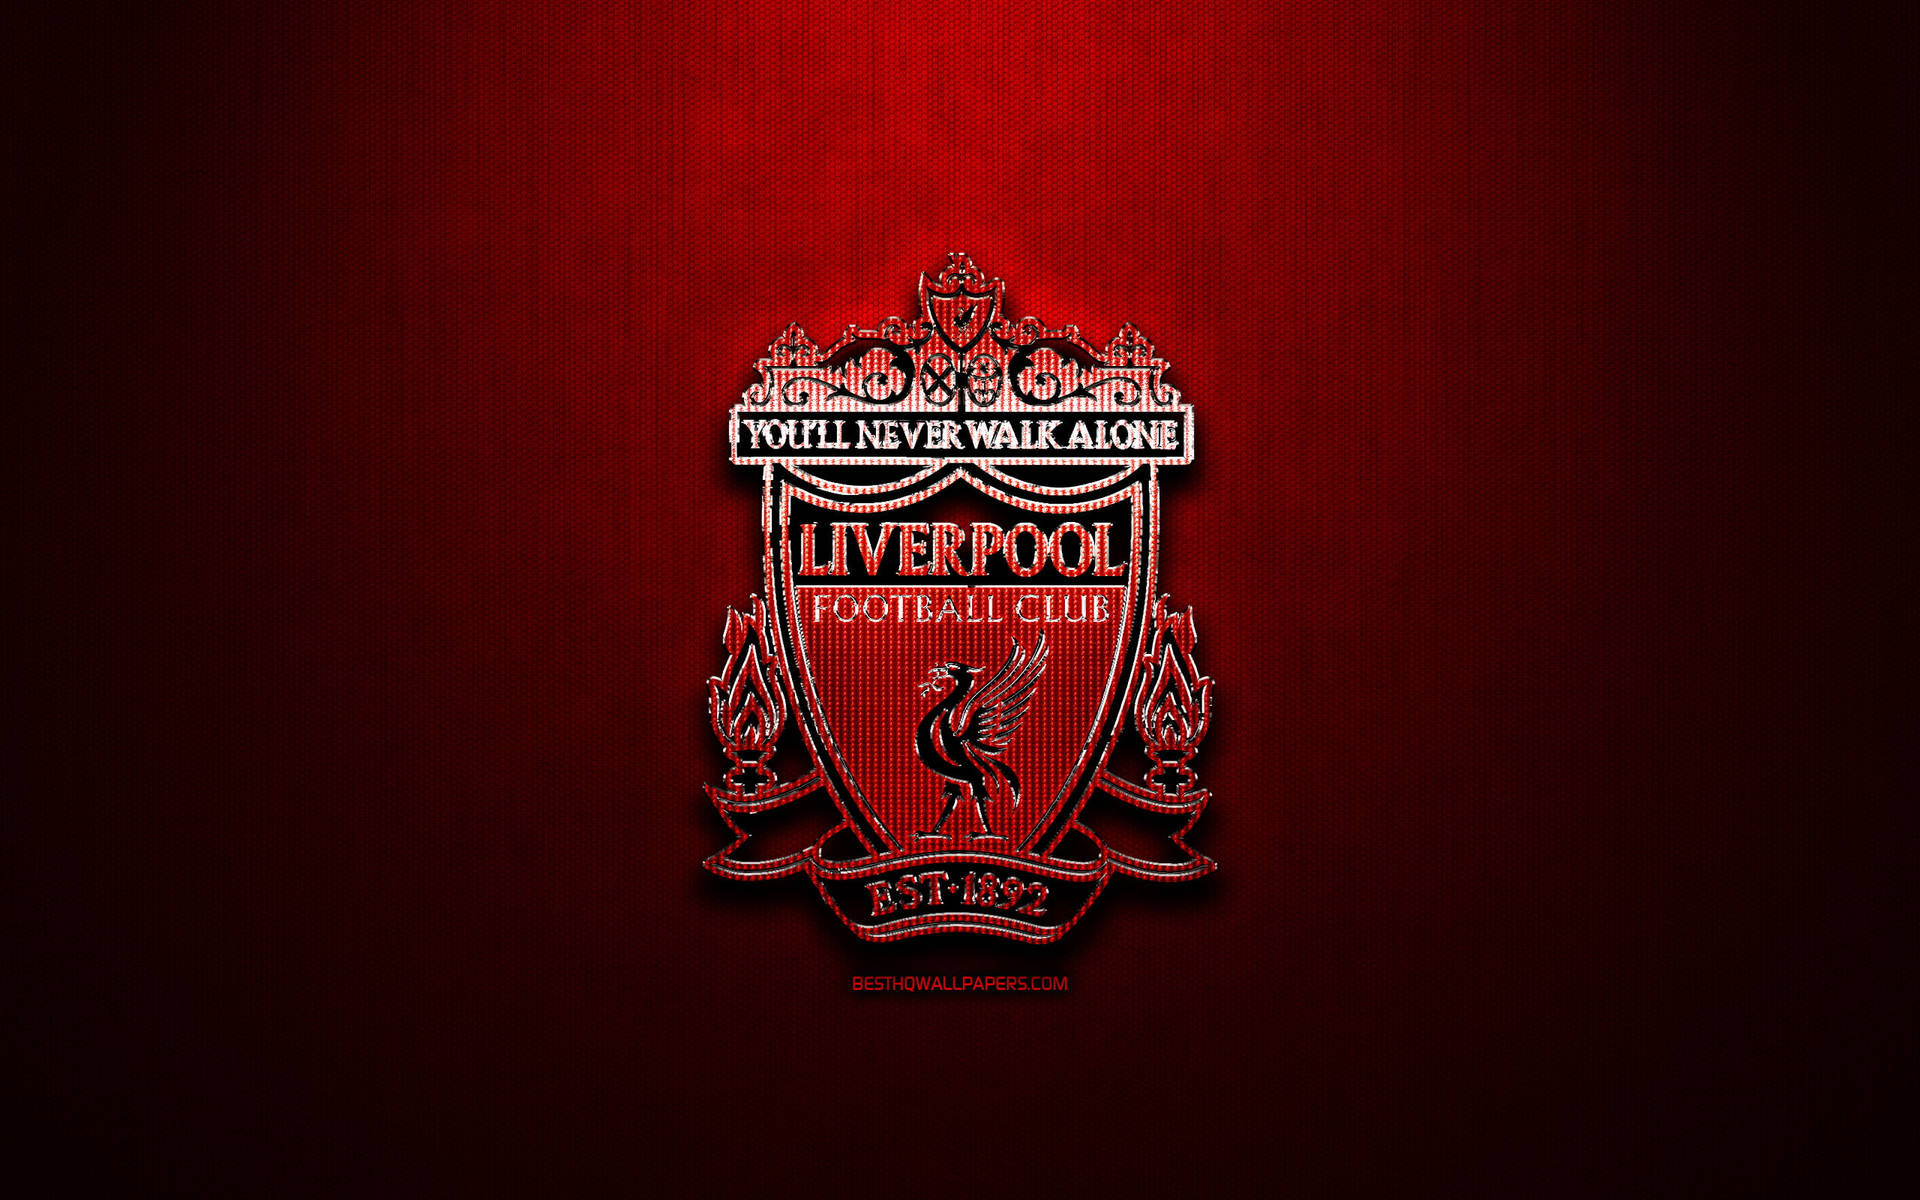 Estilovignette Do Logotipo Do Liverpool Em 4k De Imagem De Papel De Parede. Papel de Parede